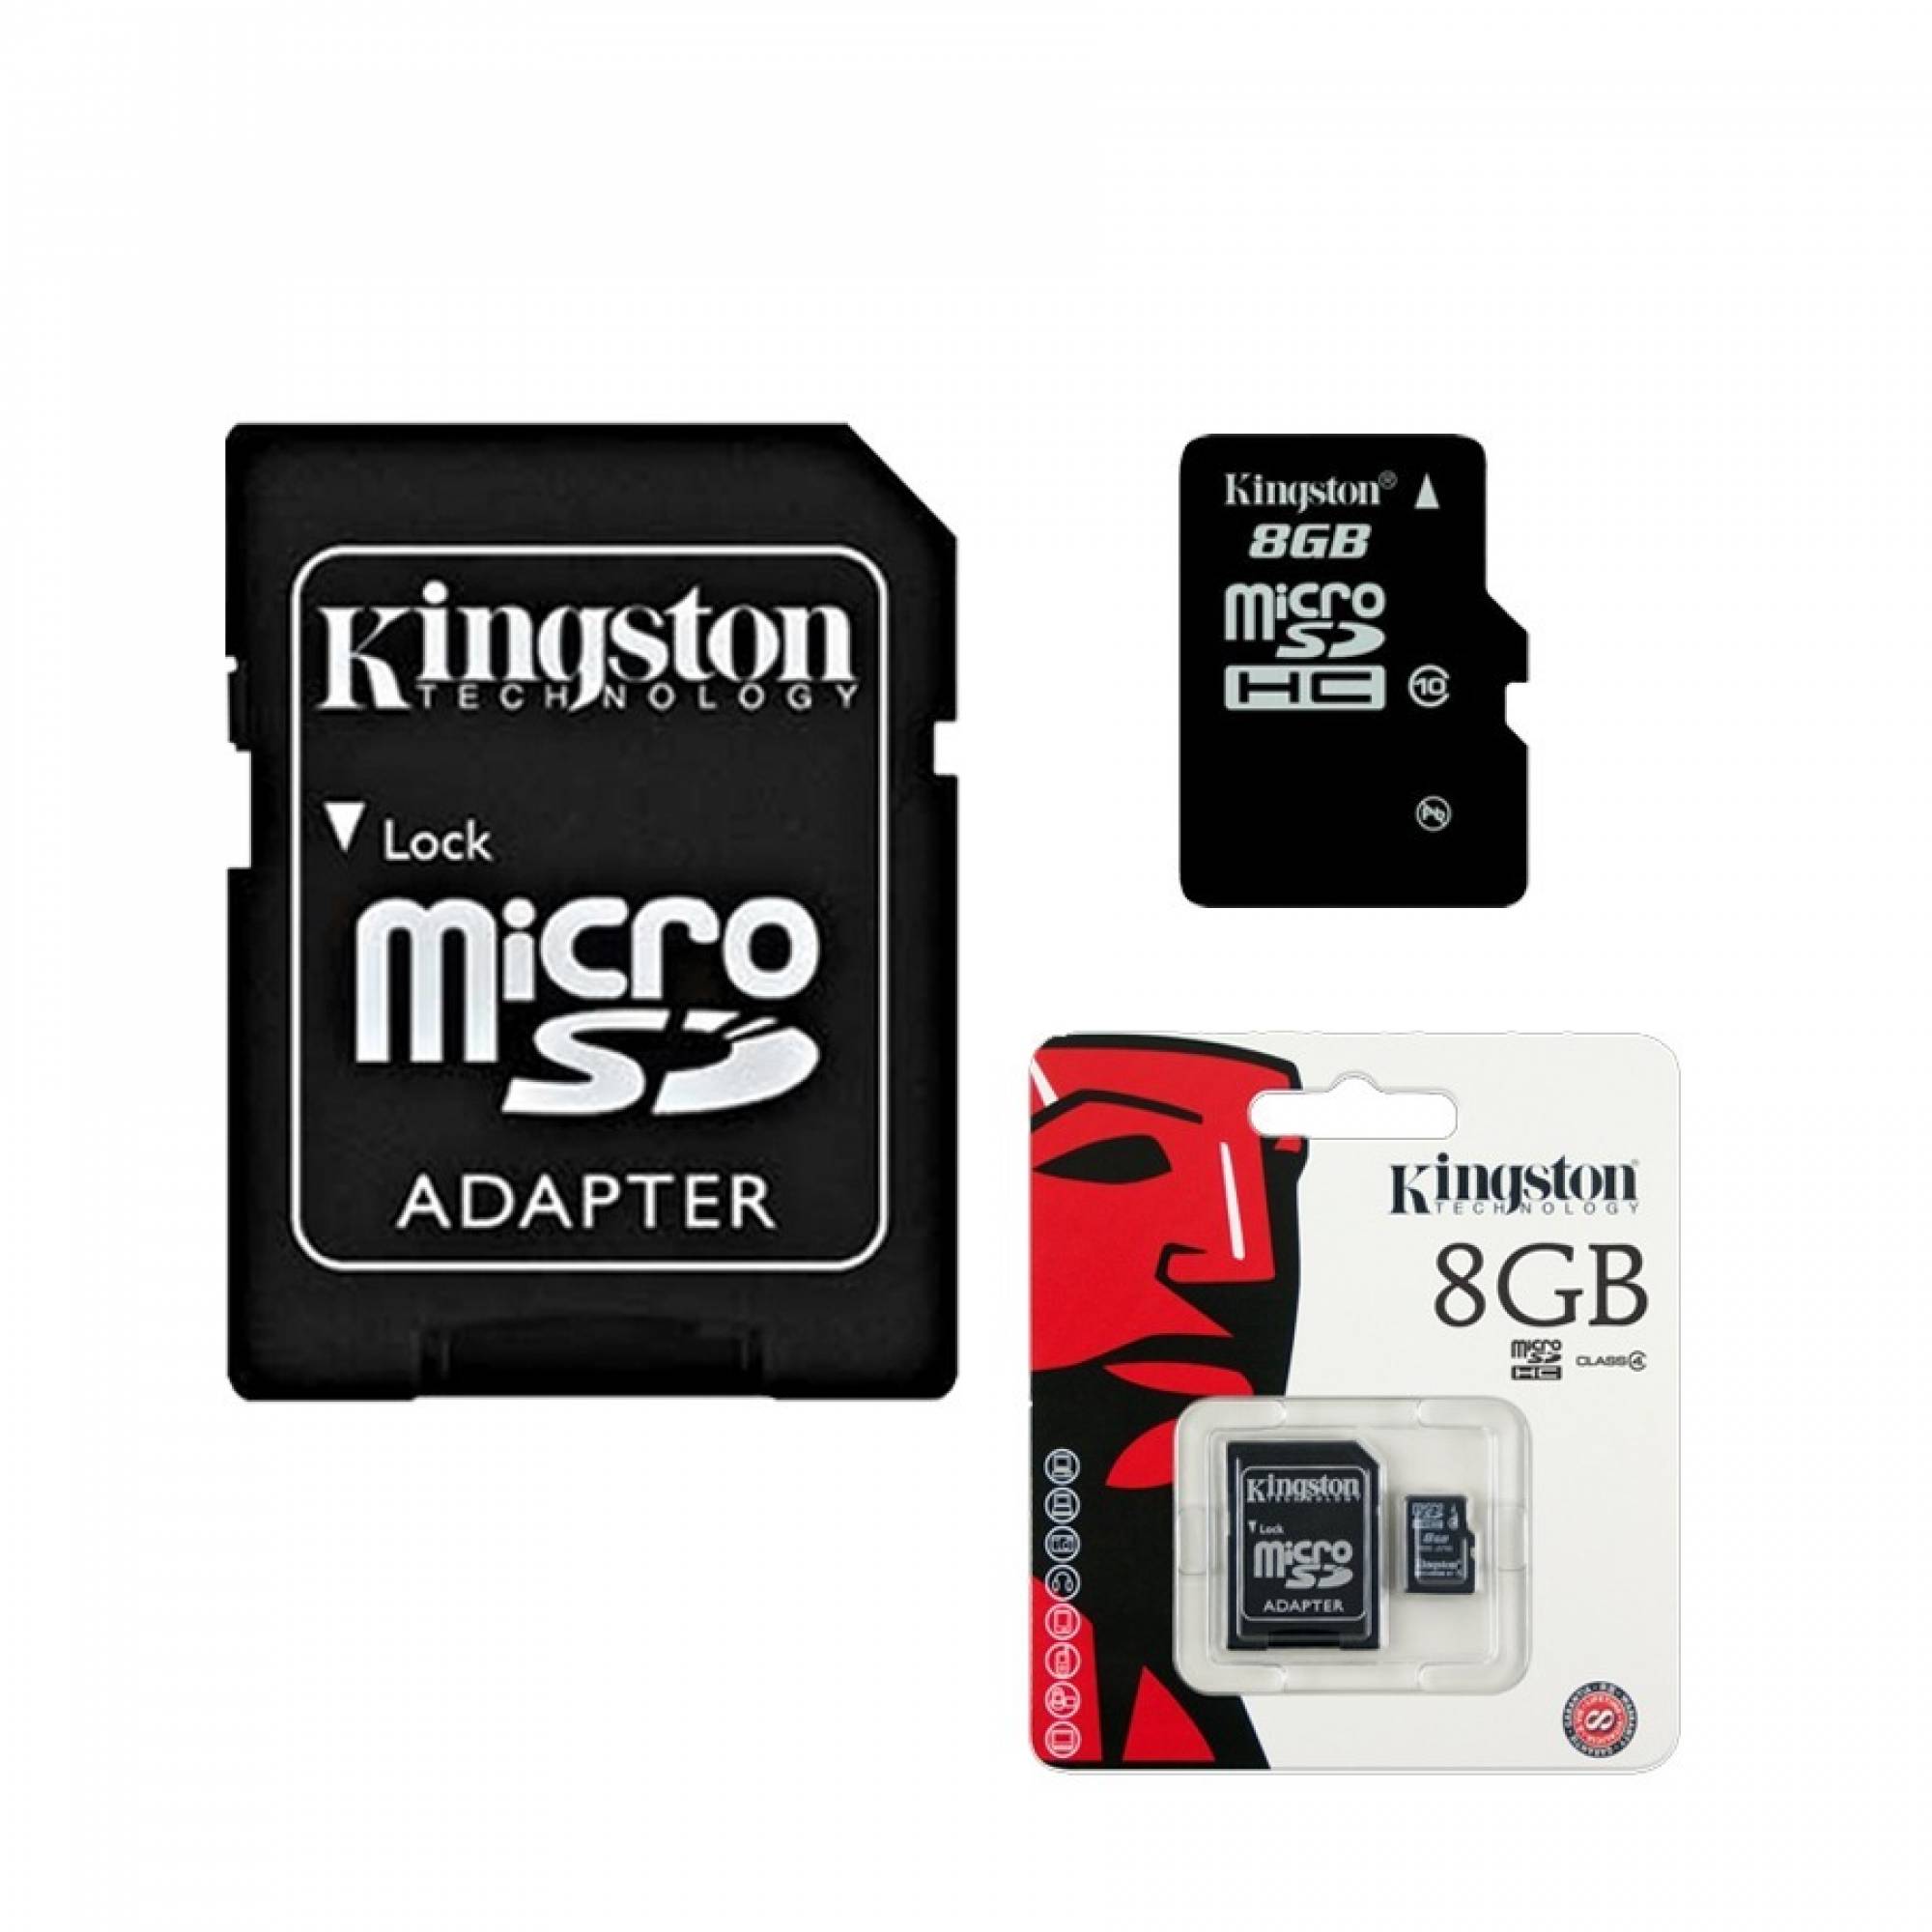 Рейтинг микро сд. Kingston MICROSD Adapter. Микро СД 8 ГБ. Адаптер микро СД на СД. MICROSD 8gb.